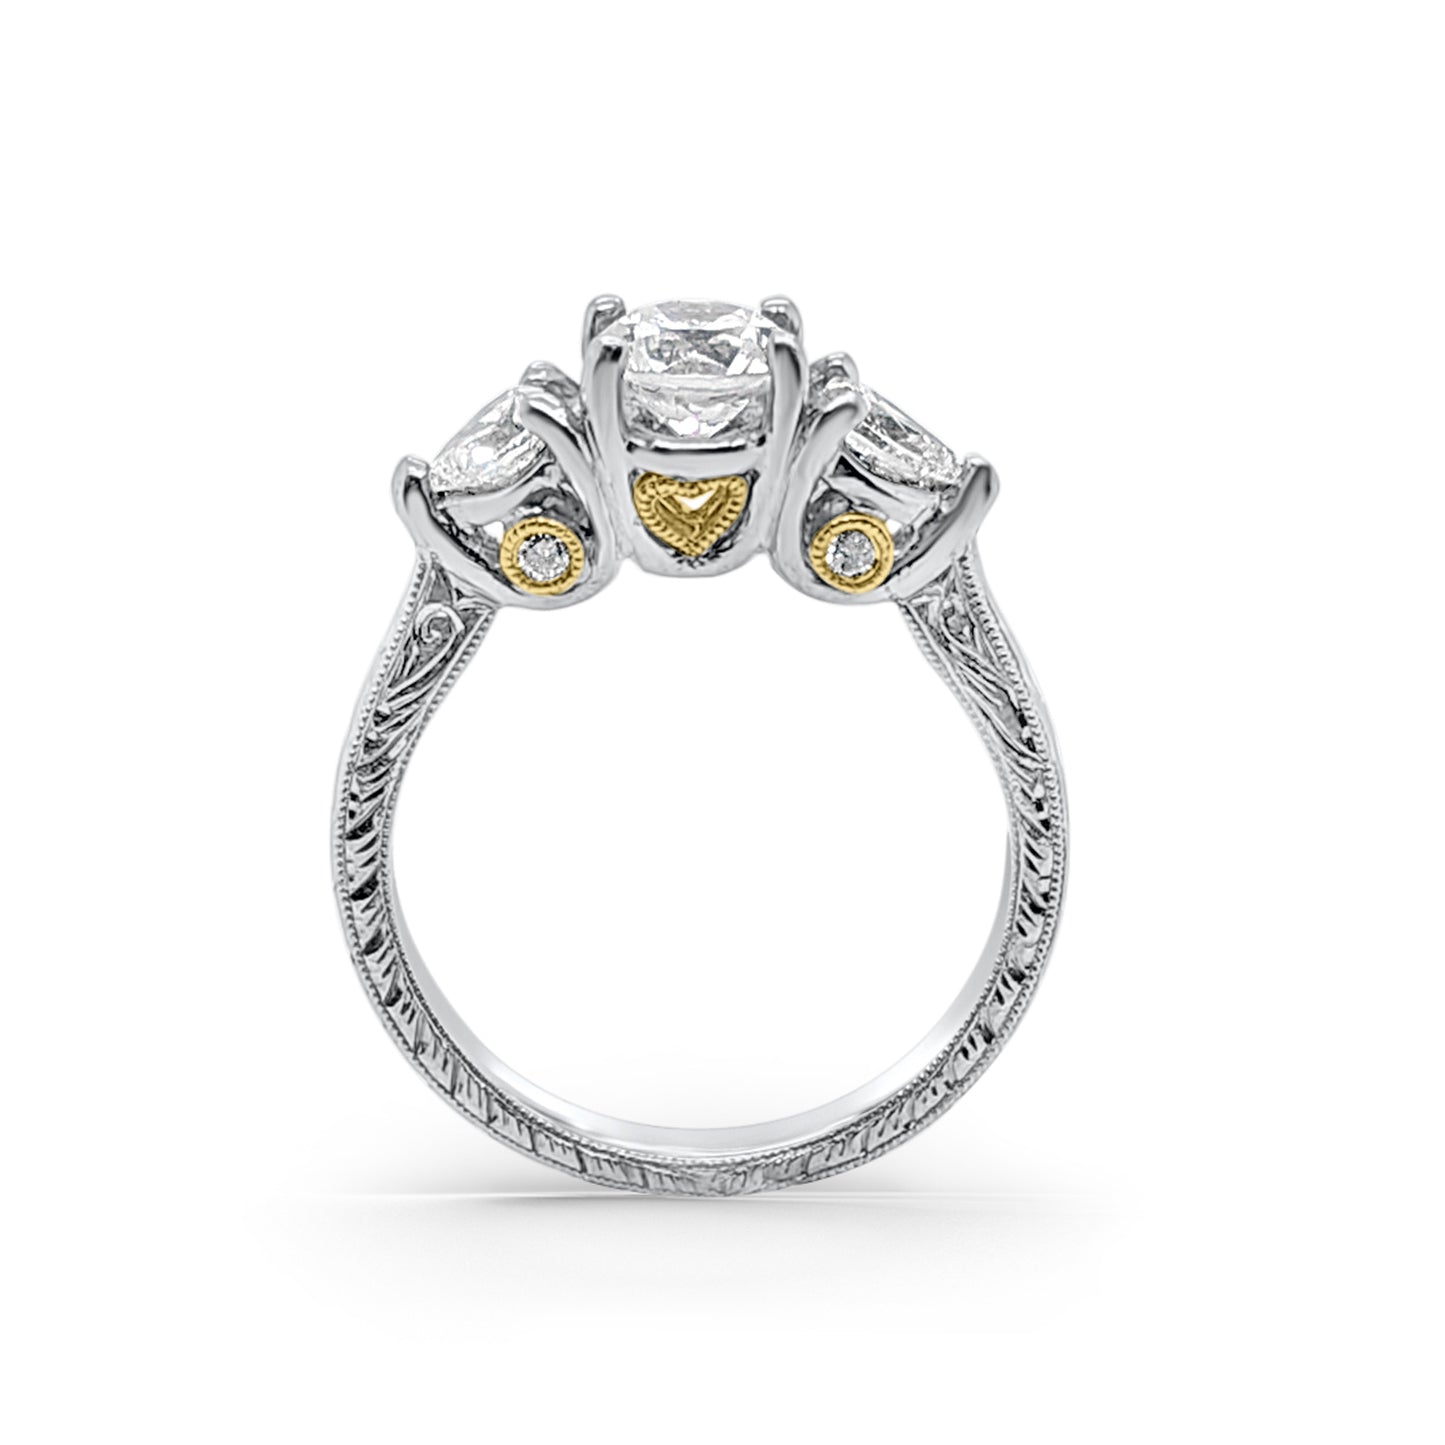 Platinum 18K Yellow Gold Three Stone Diamond Engagement Ring